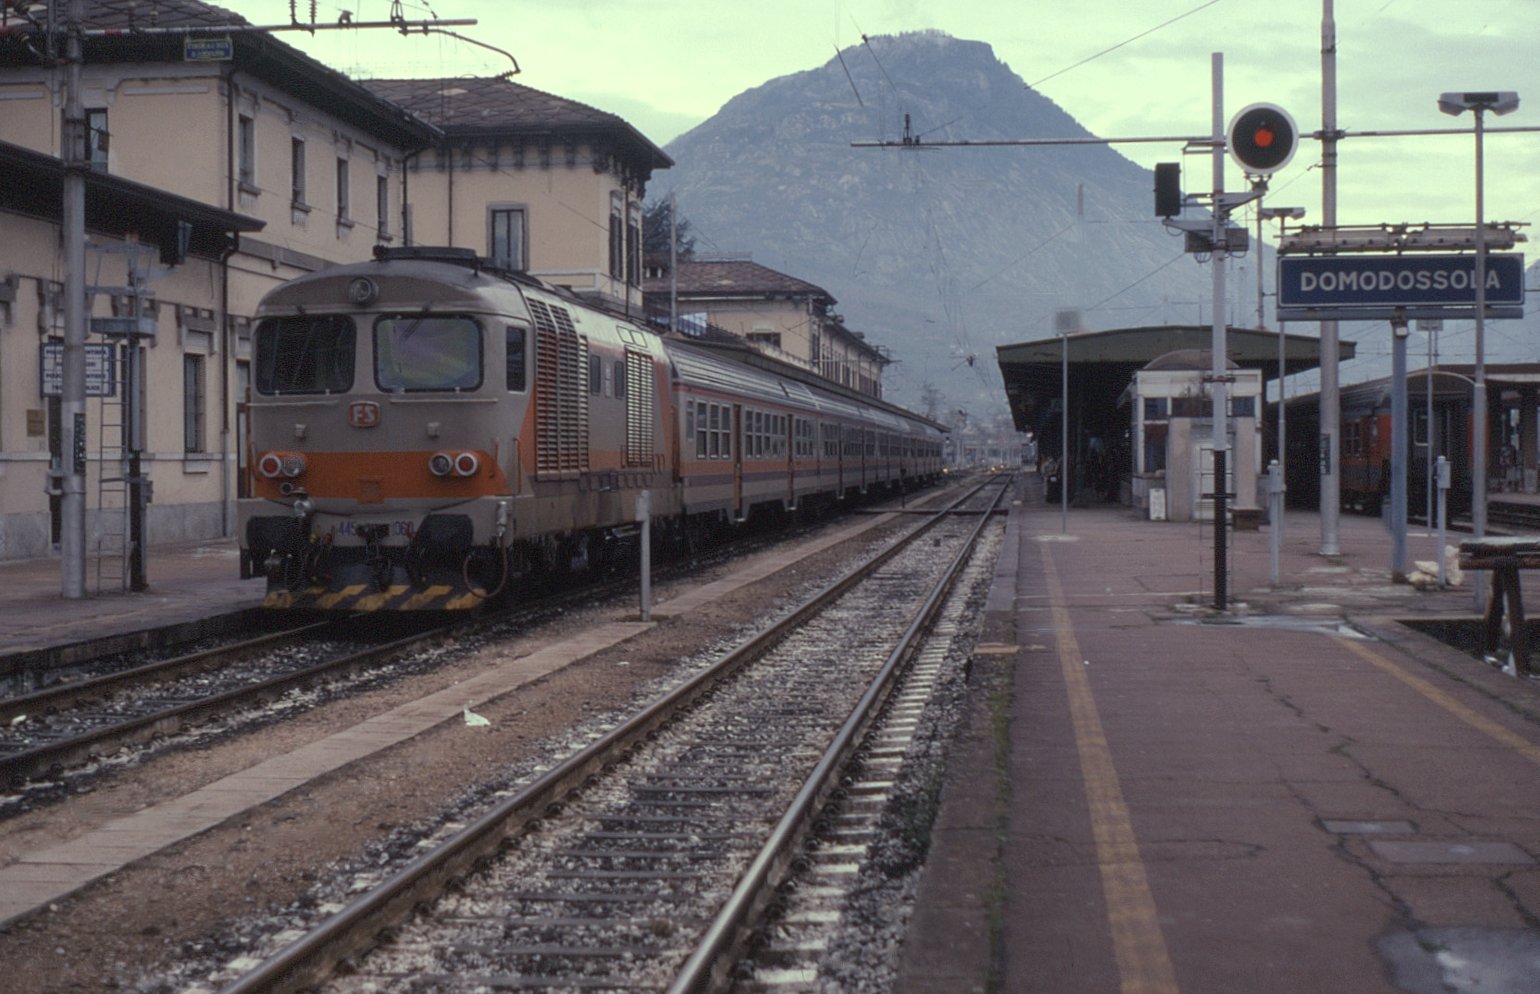 Domodossola station